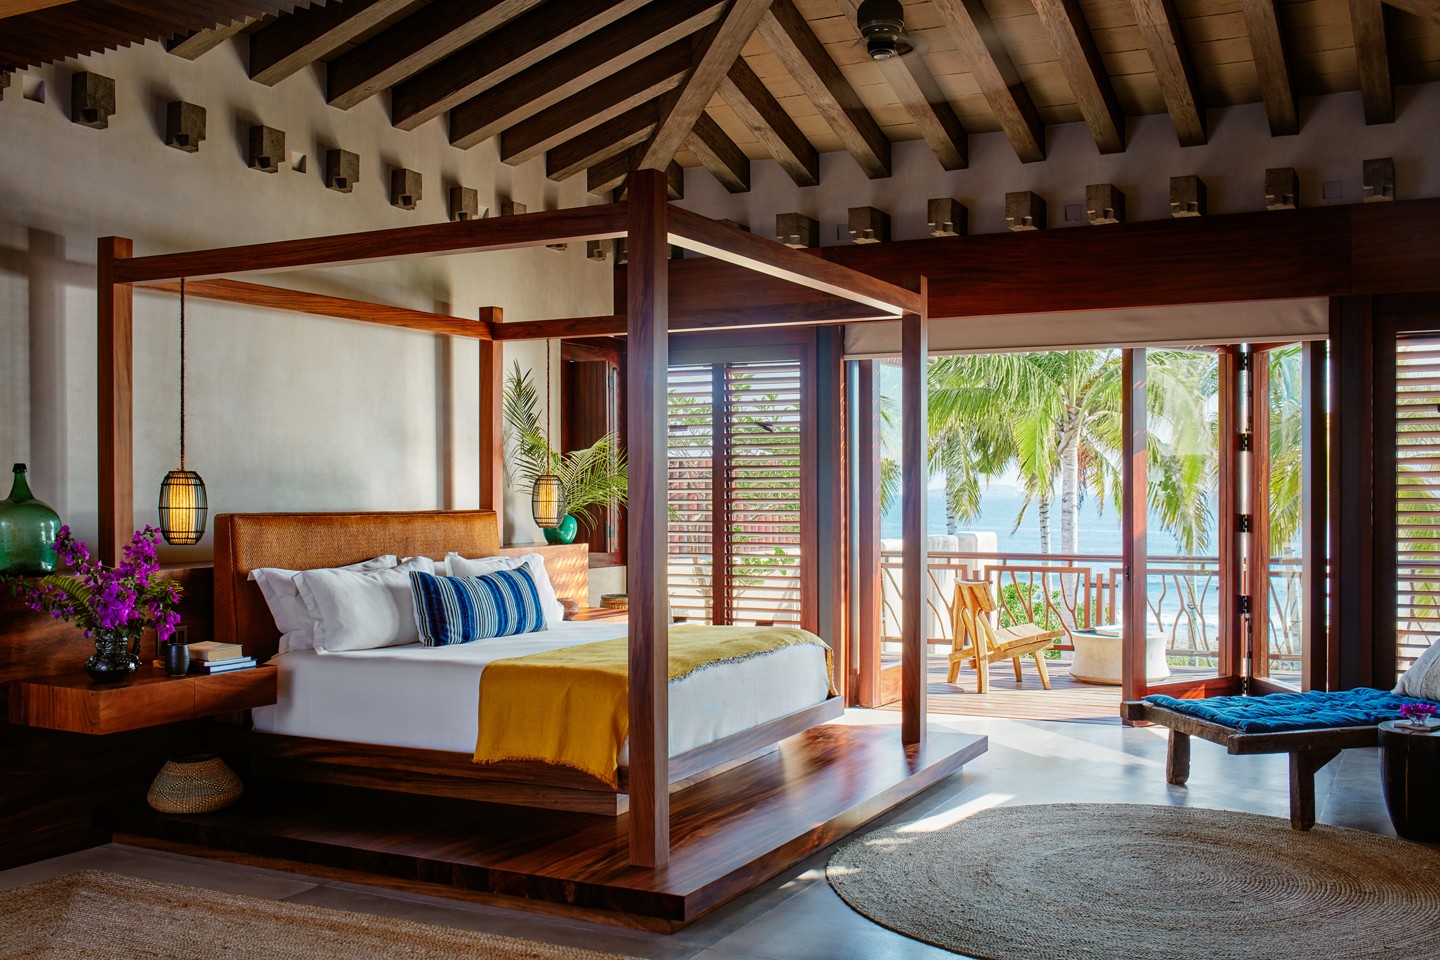 Airbnb lança serviço de aluguel de casas luxuosas ao redor do mundo (Foto: Airbnb/Divulgação)